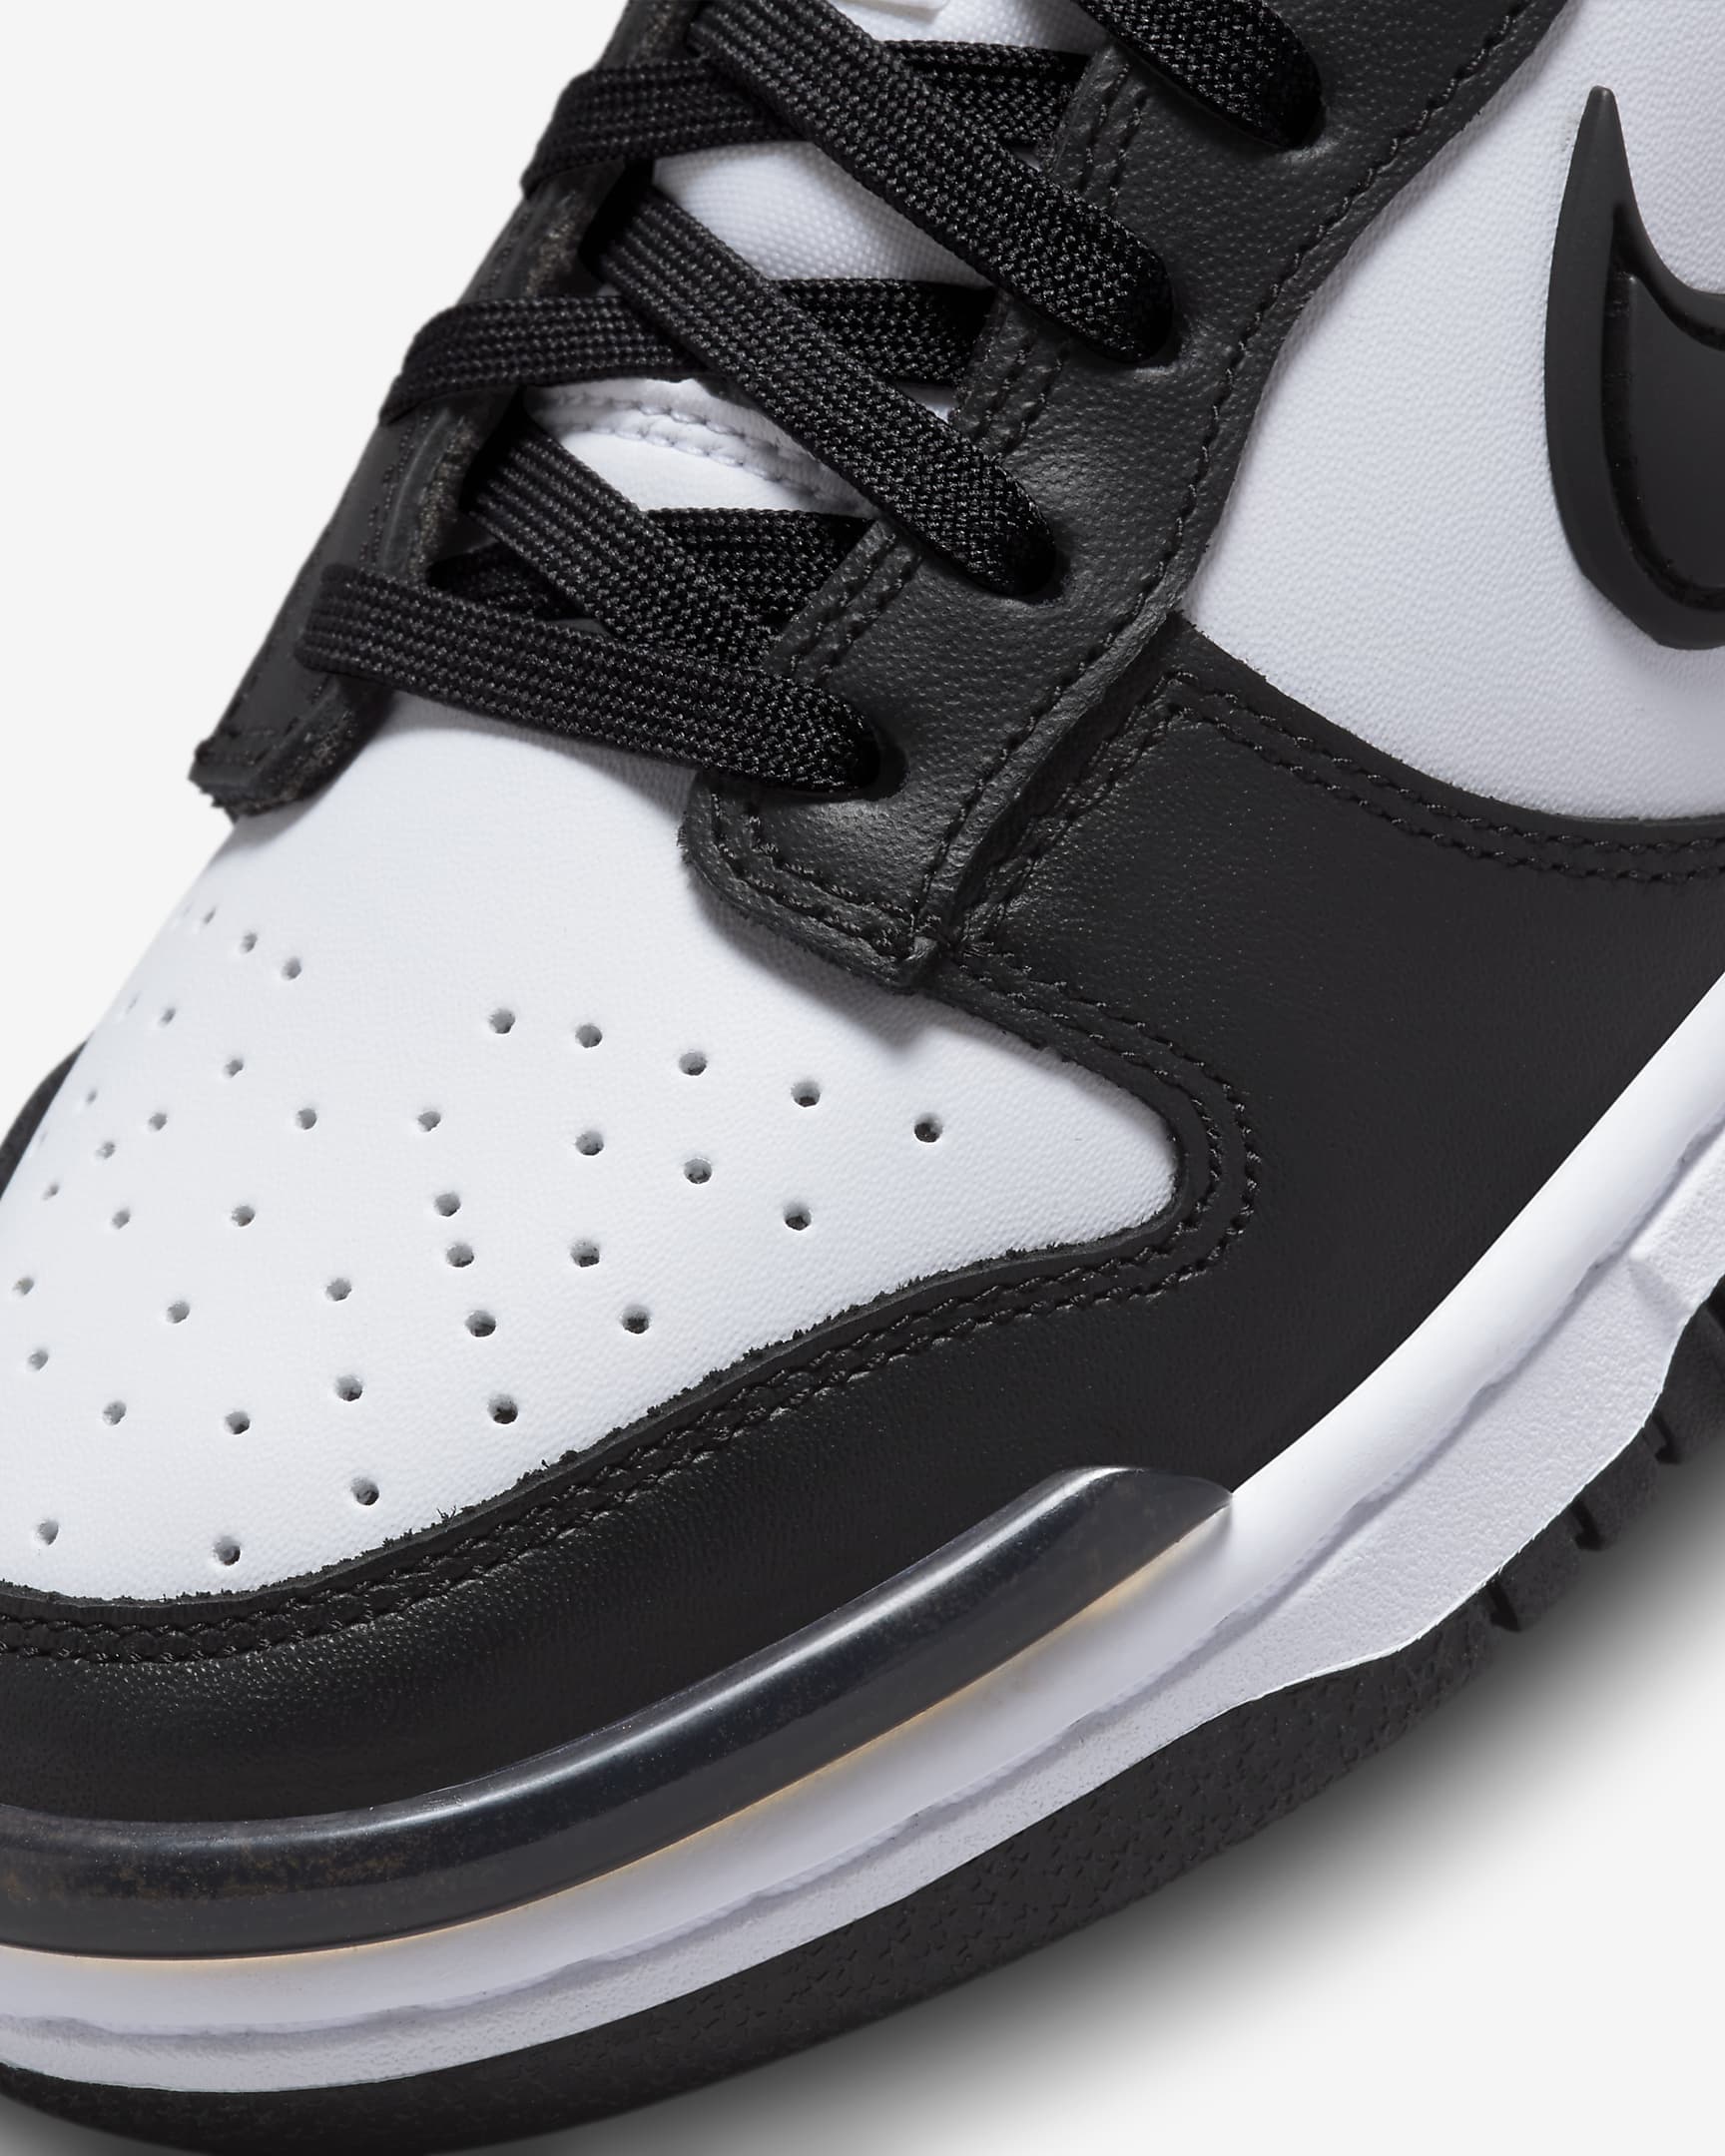 Chaussure Nike Dunk Low Twist pour femme - Noir/Noir/Blanc